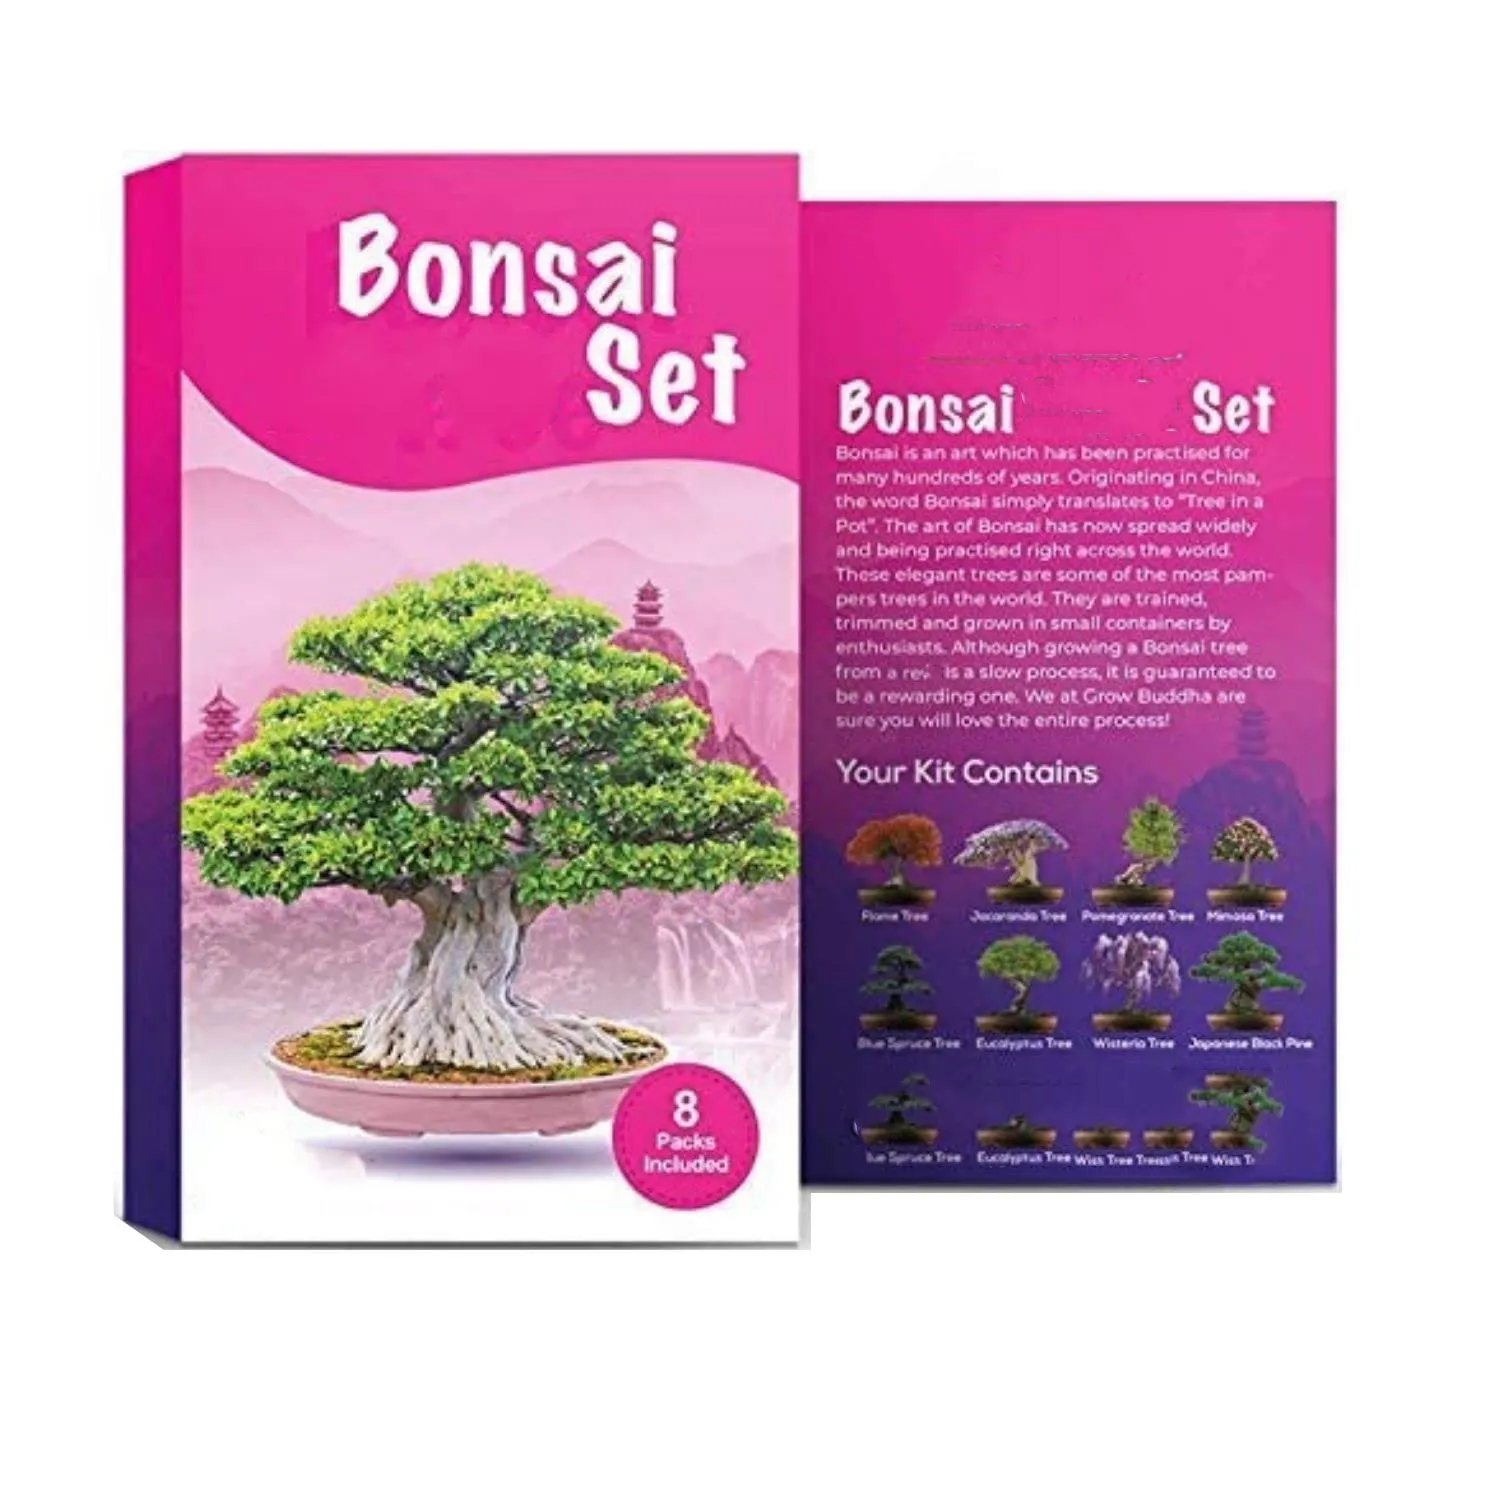 unique 100% USDA NGO bonsai gift set grow your own bonsai tree easily personal plant bonsai starter kit garden grow kit diy